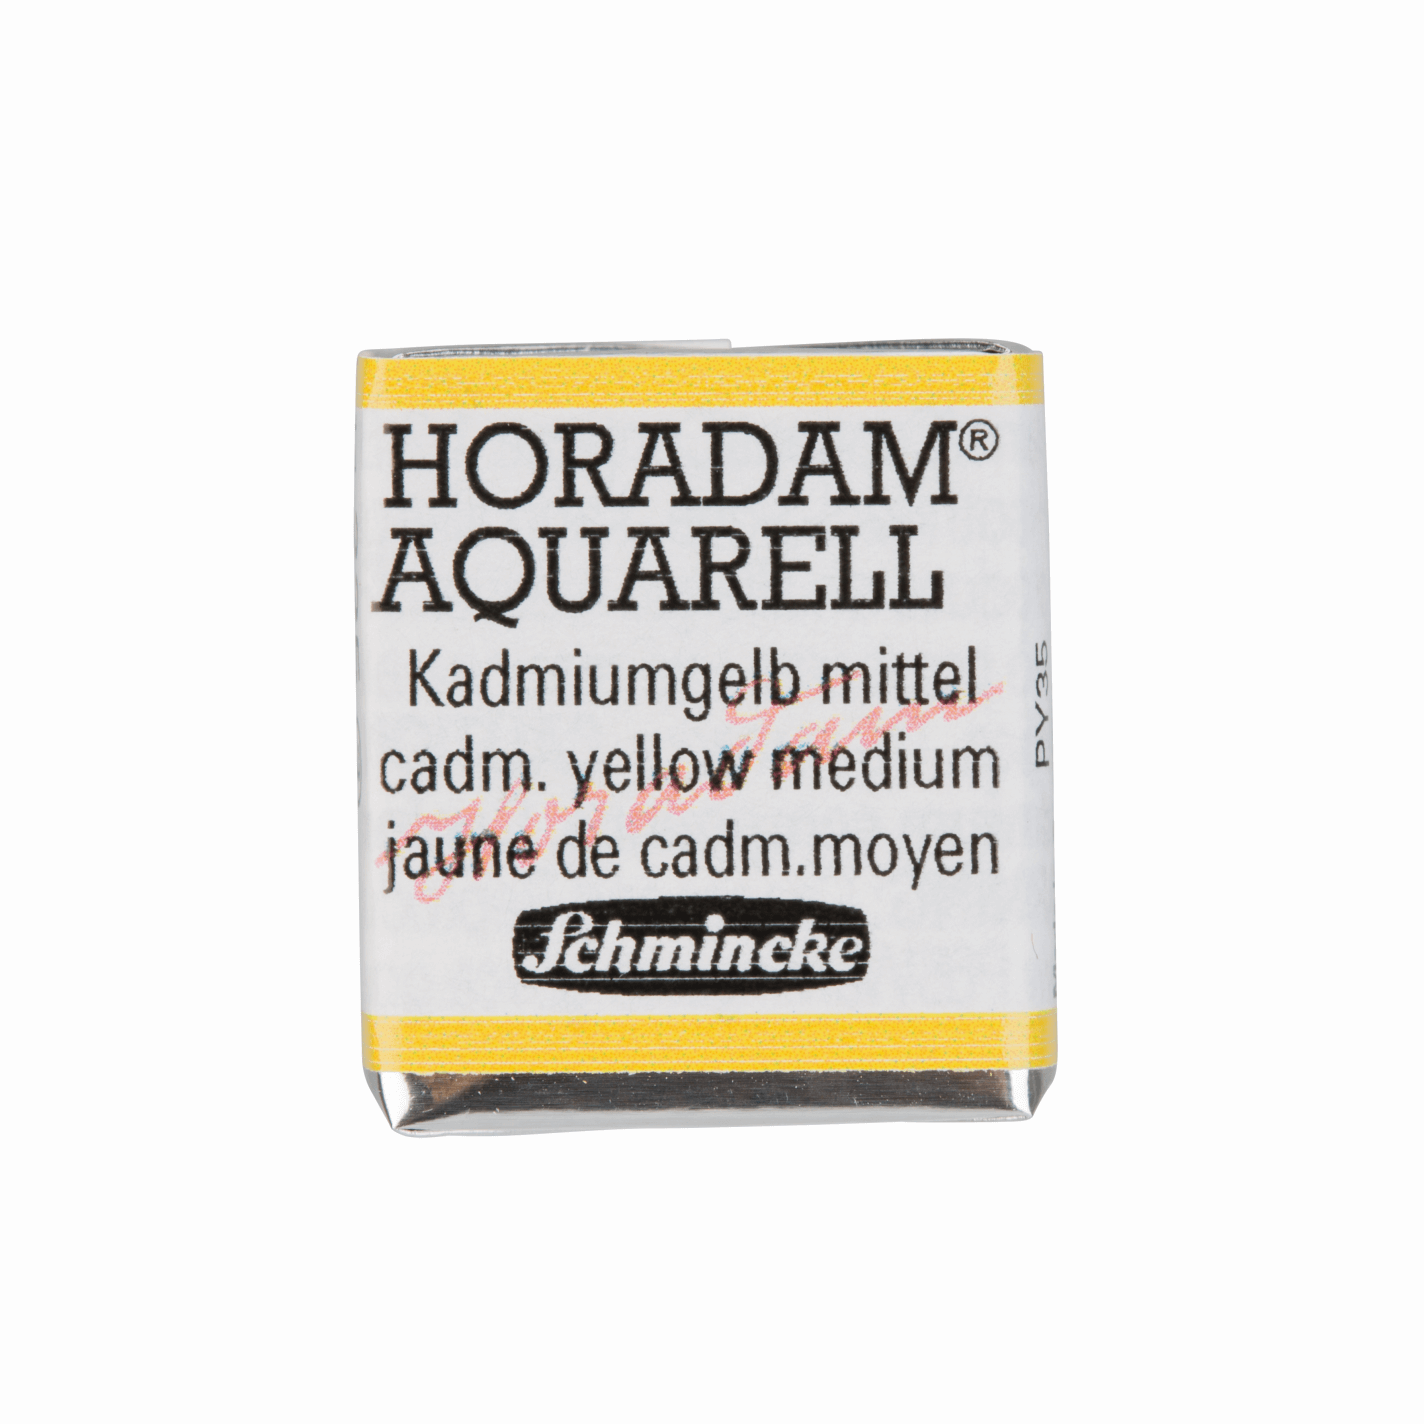 Schmincke Horadam Aquarell pans 1/2 pan Cadmium Yellow Medium